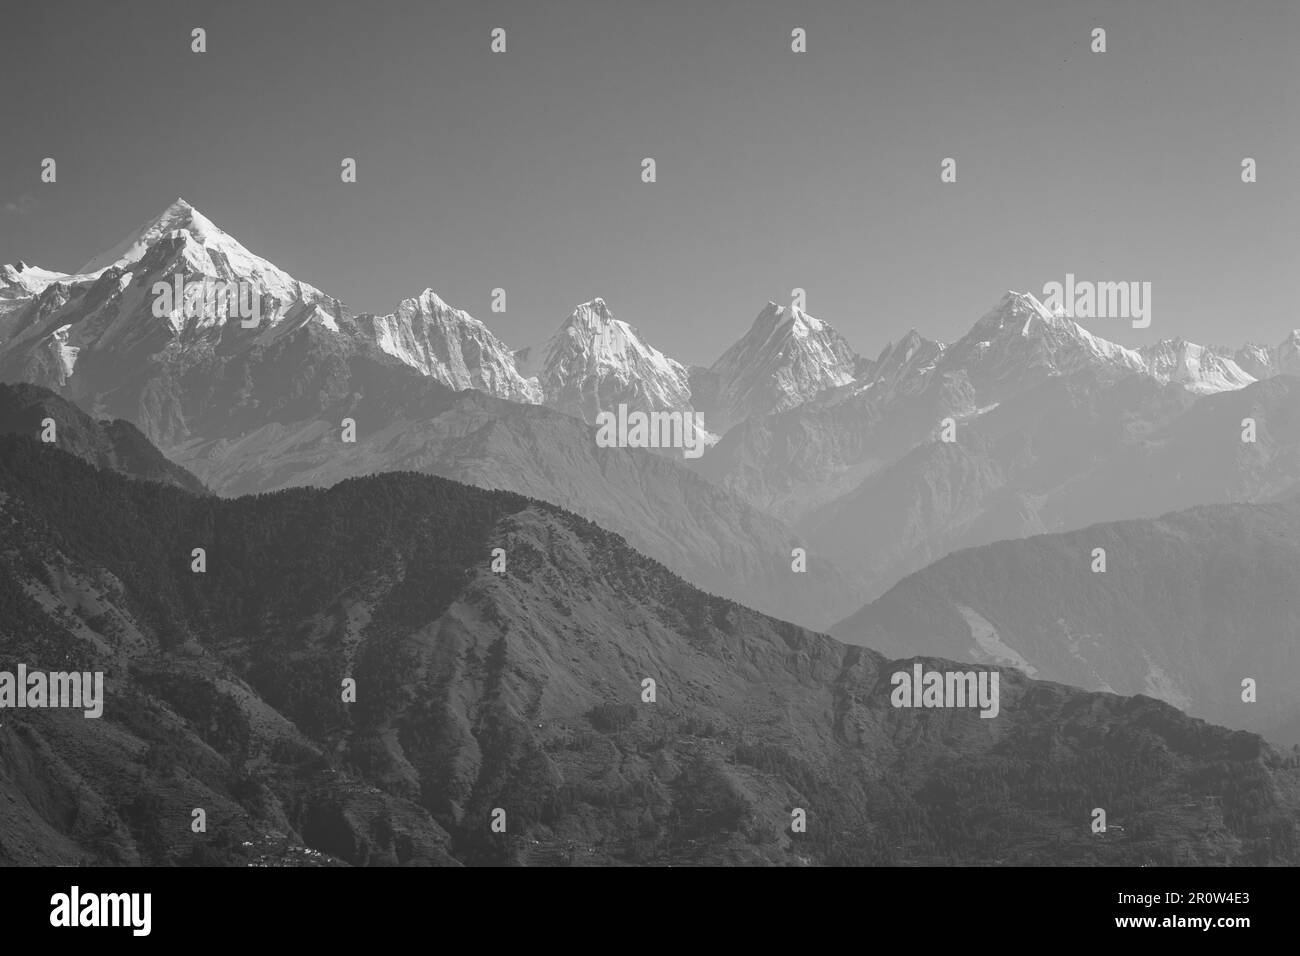 Magnifique paysage himalayan dans la brume matinale, noir et blanc. Sommets enneigés et montagnes de l'Himalaya, monochrome. La nature de l'Himalaya. Banque D'Images